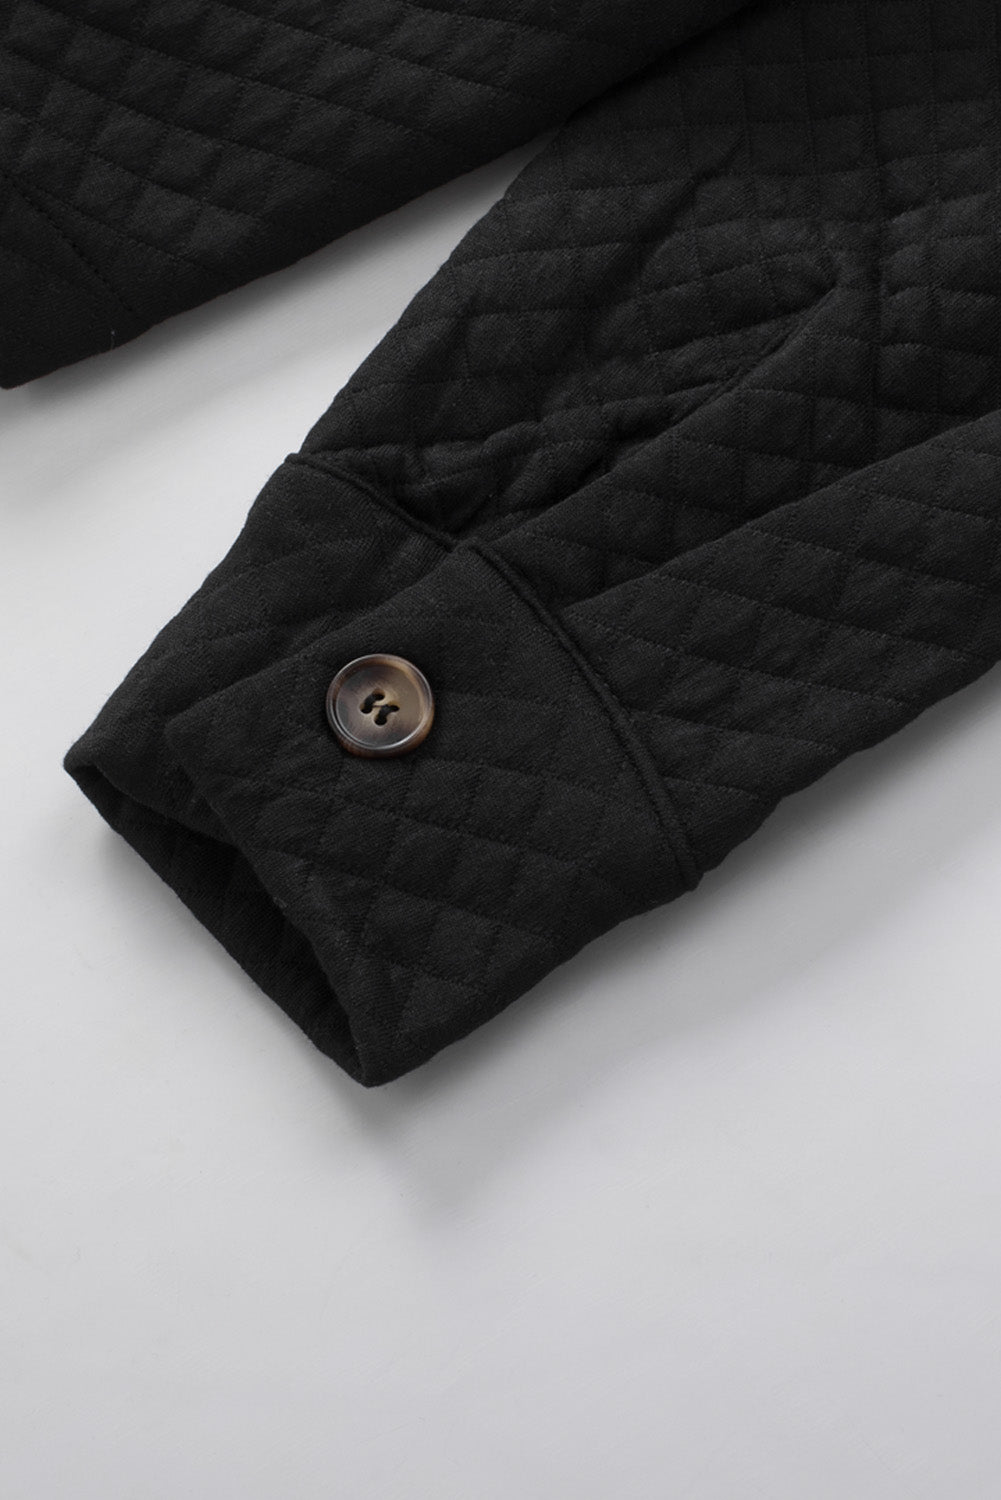 Khakifarbene, gesteppte Retro-Jacke mit Knopfleiste und Pattentasche